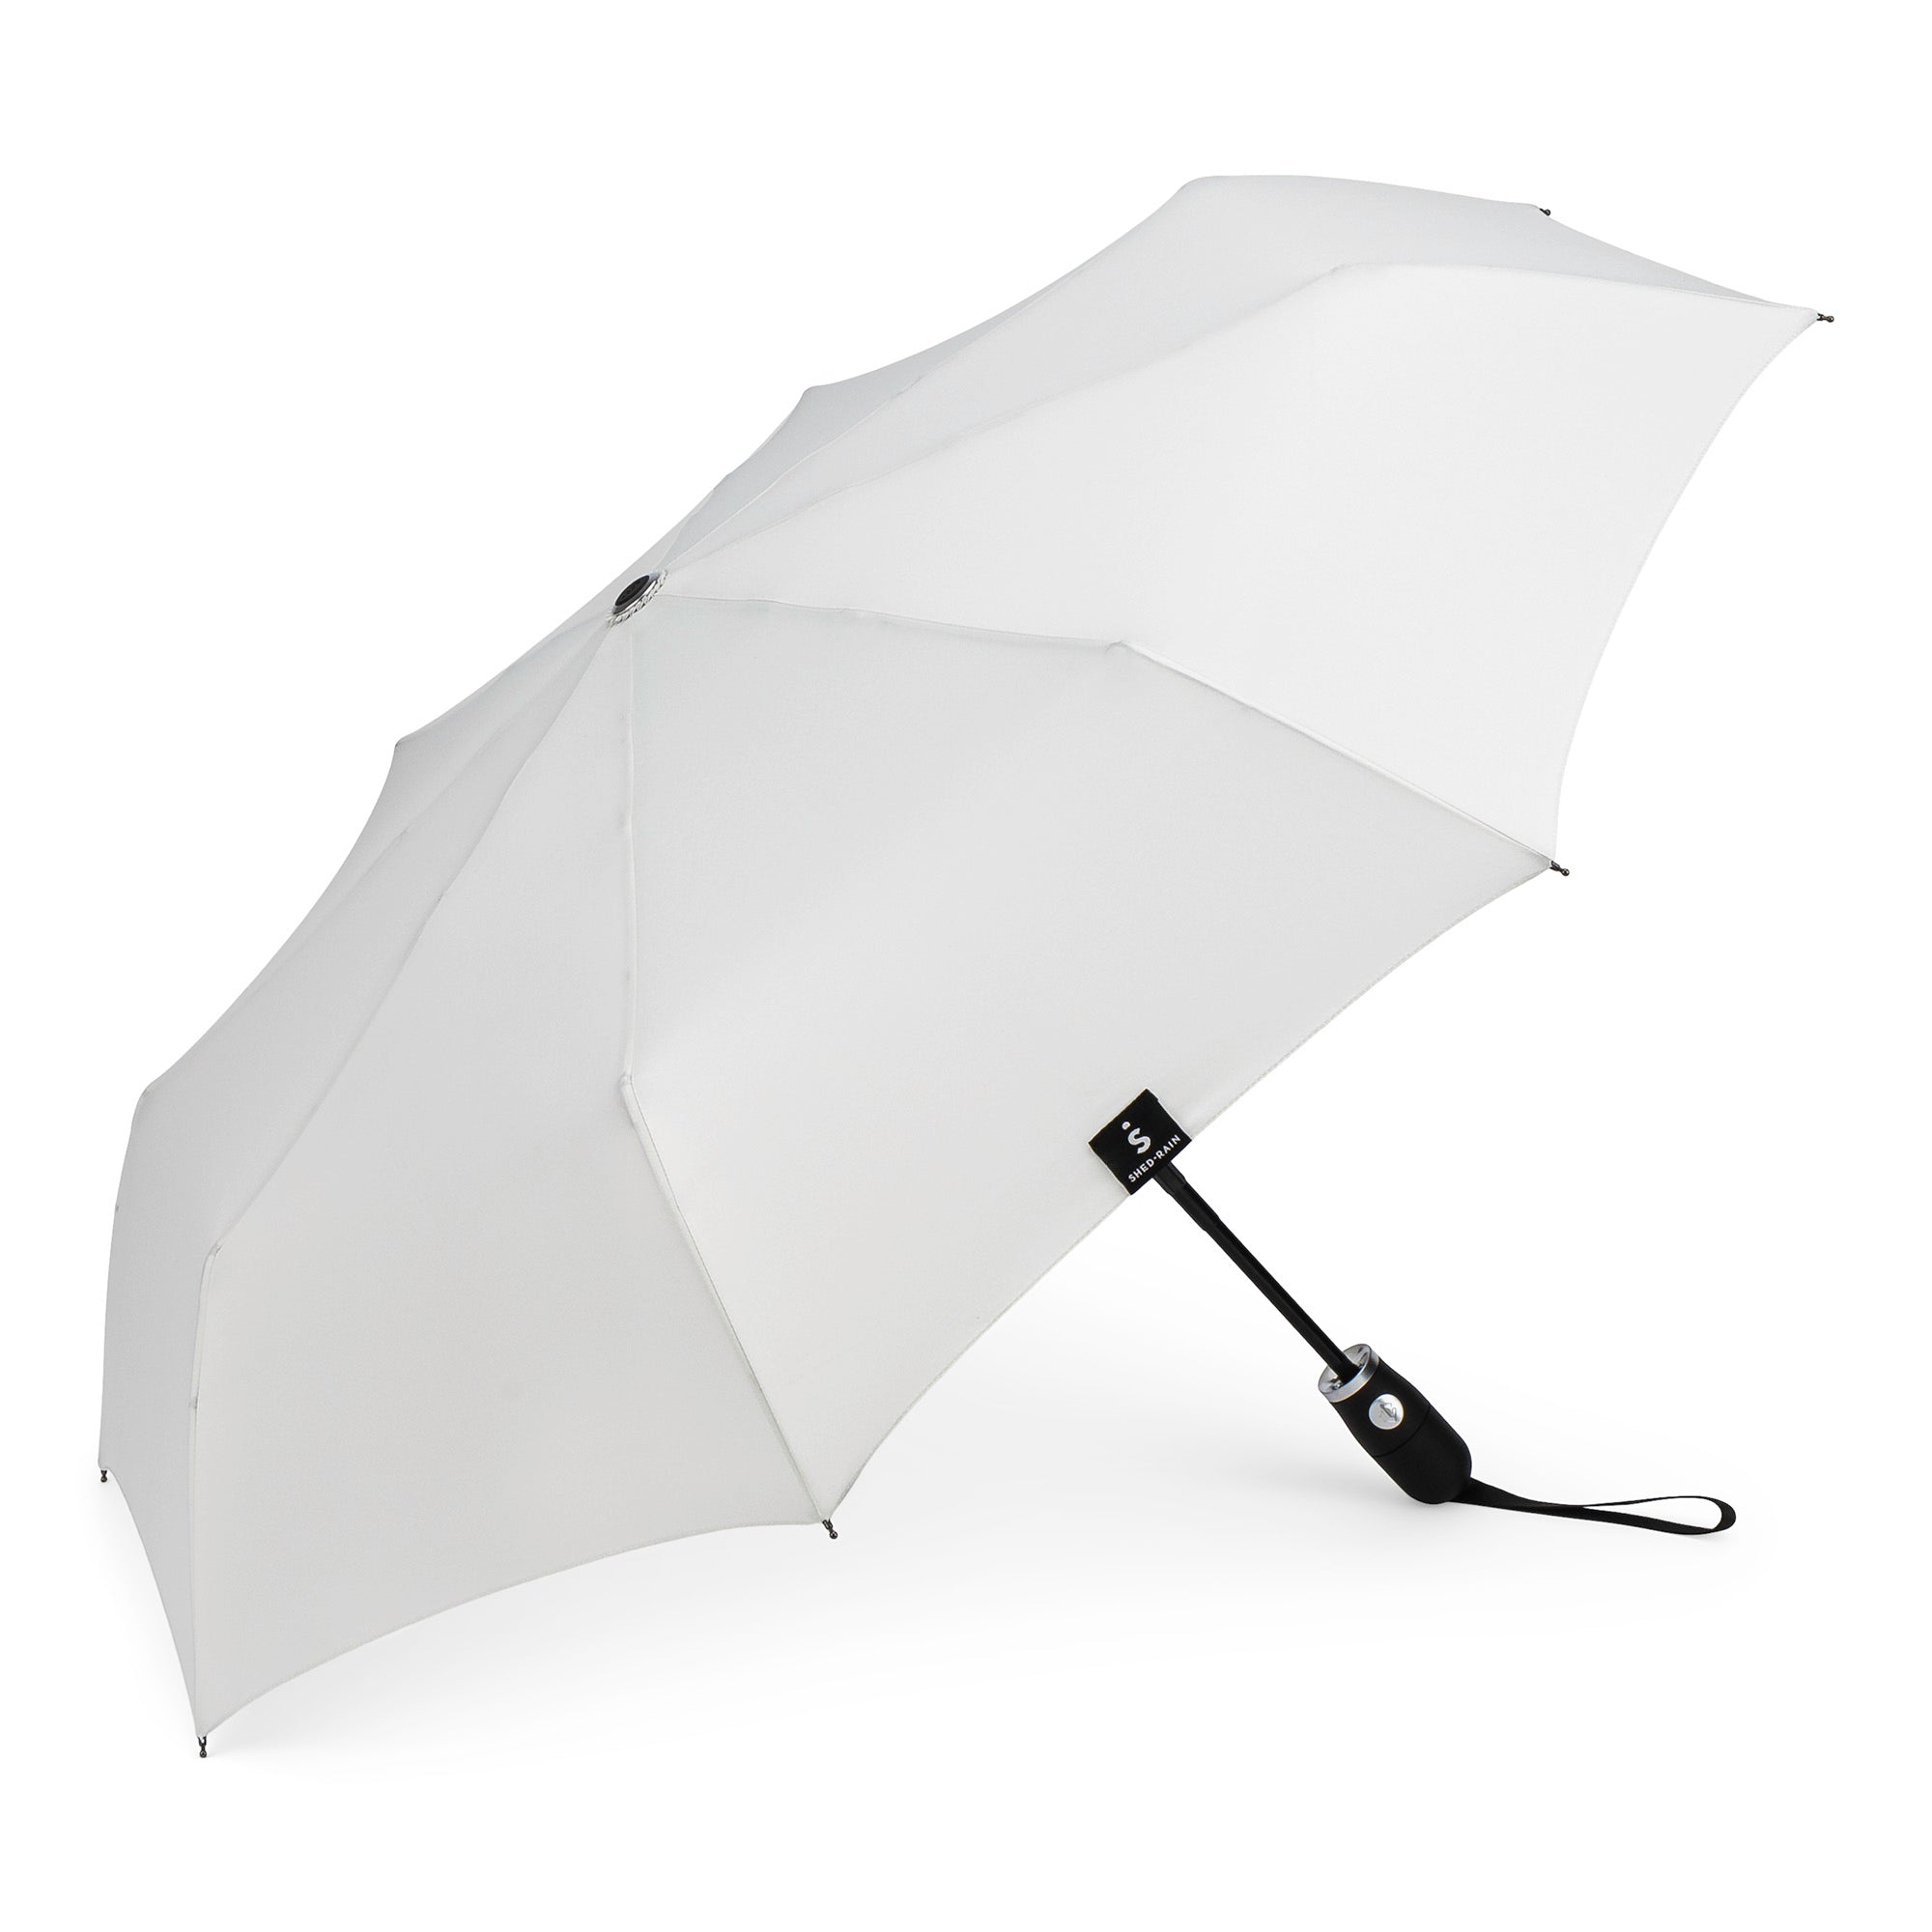 Auto Open Auto Close Compact Umbrella in STONE color (white-grey) - 2467 